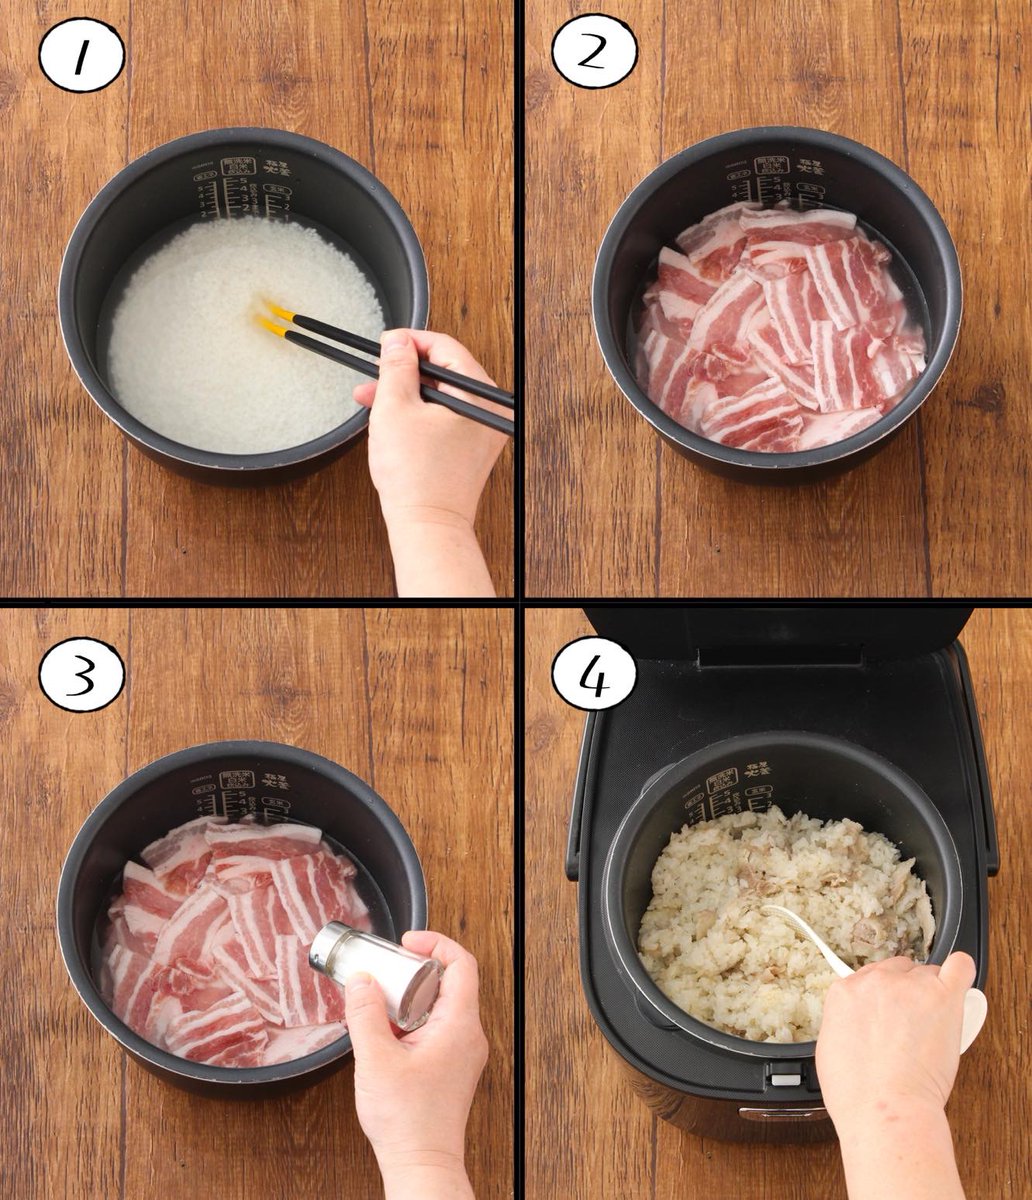 お米に豚バラ肉の甘みが!超簡単に作れる「至福のバラ飯」のレシピ!